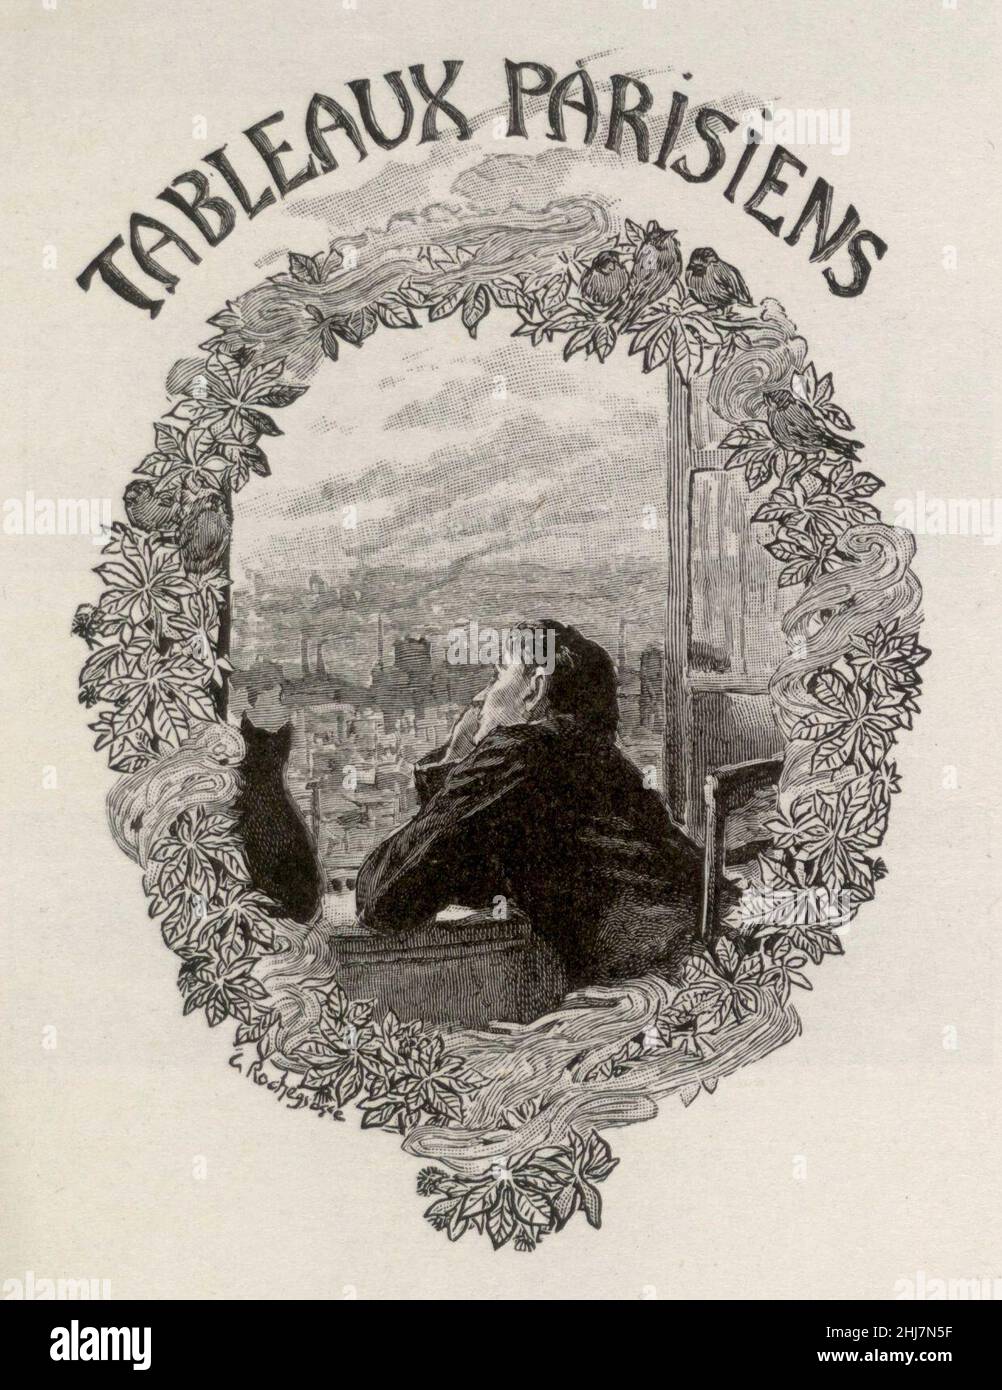 Tableaux parisiens, 1917 Stock Photo - Alamy